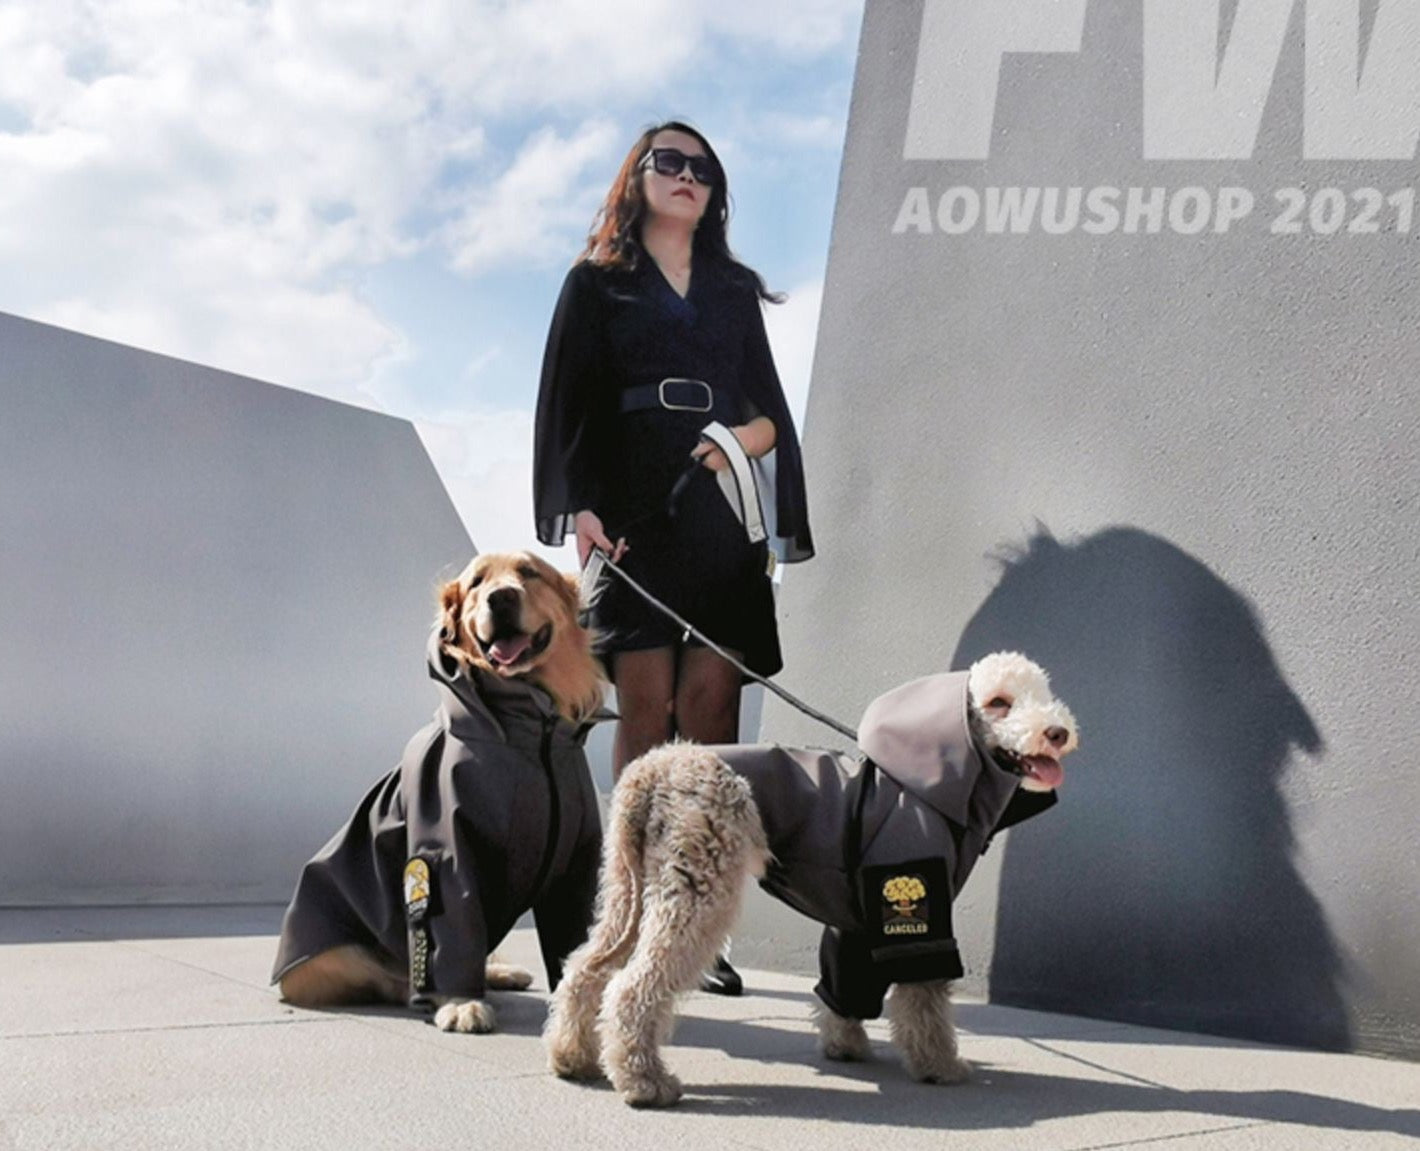 Aowu Shop Dog Jacket